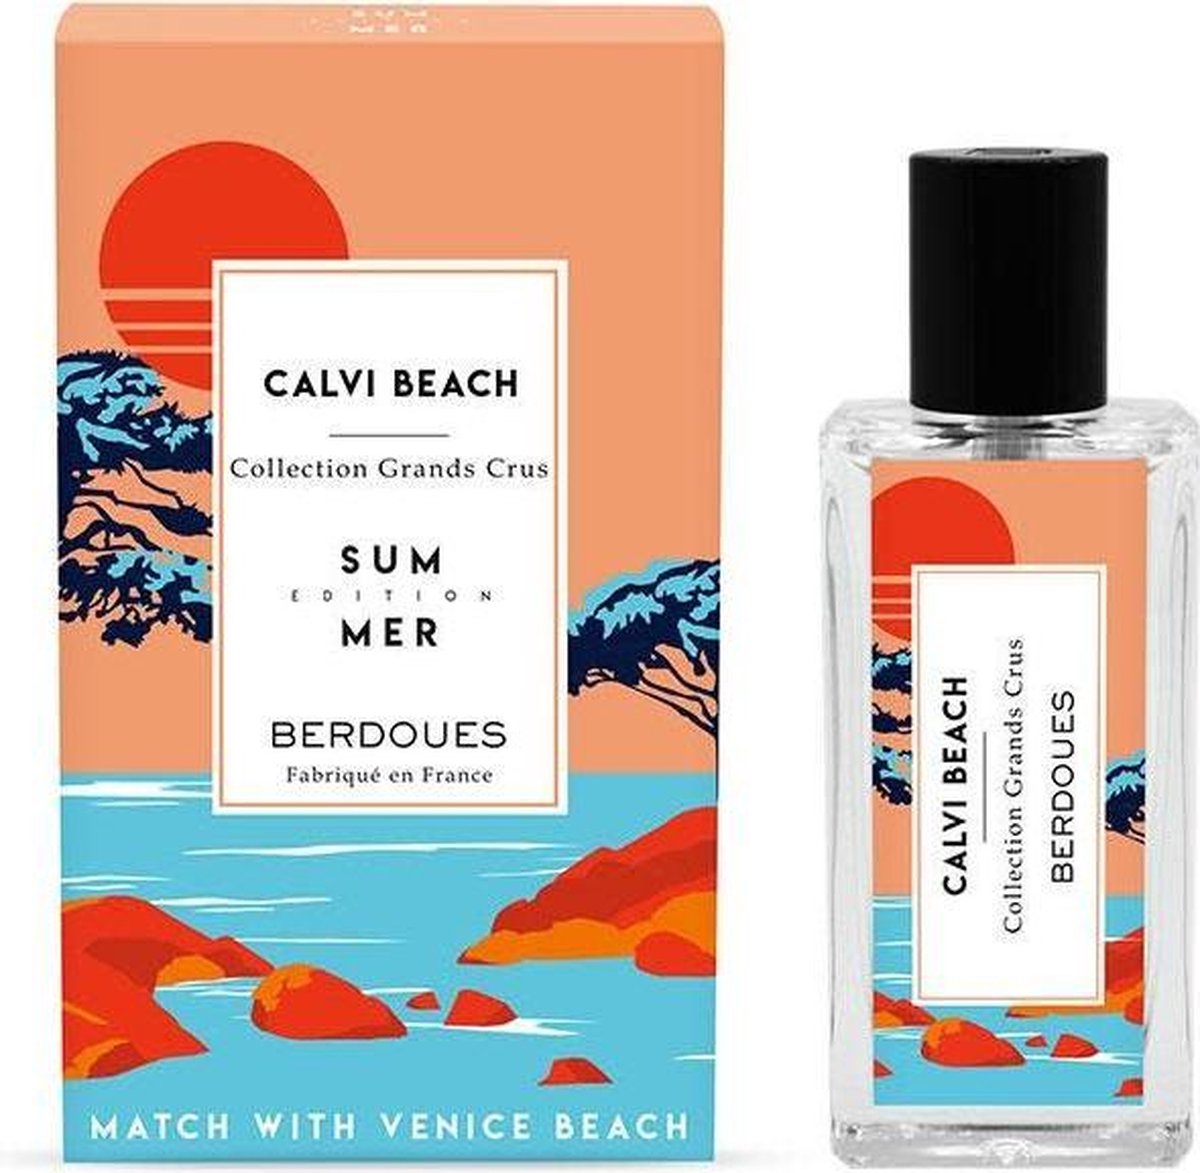 Berdoues Grand Cru - Calvi Beach - Limited Edition